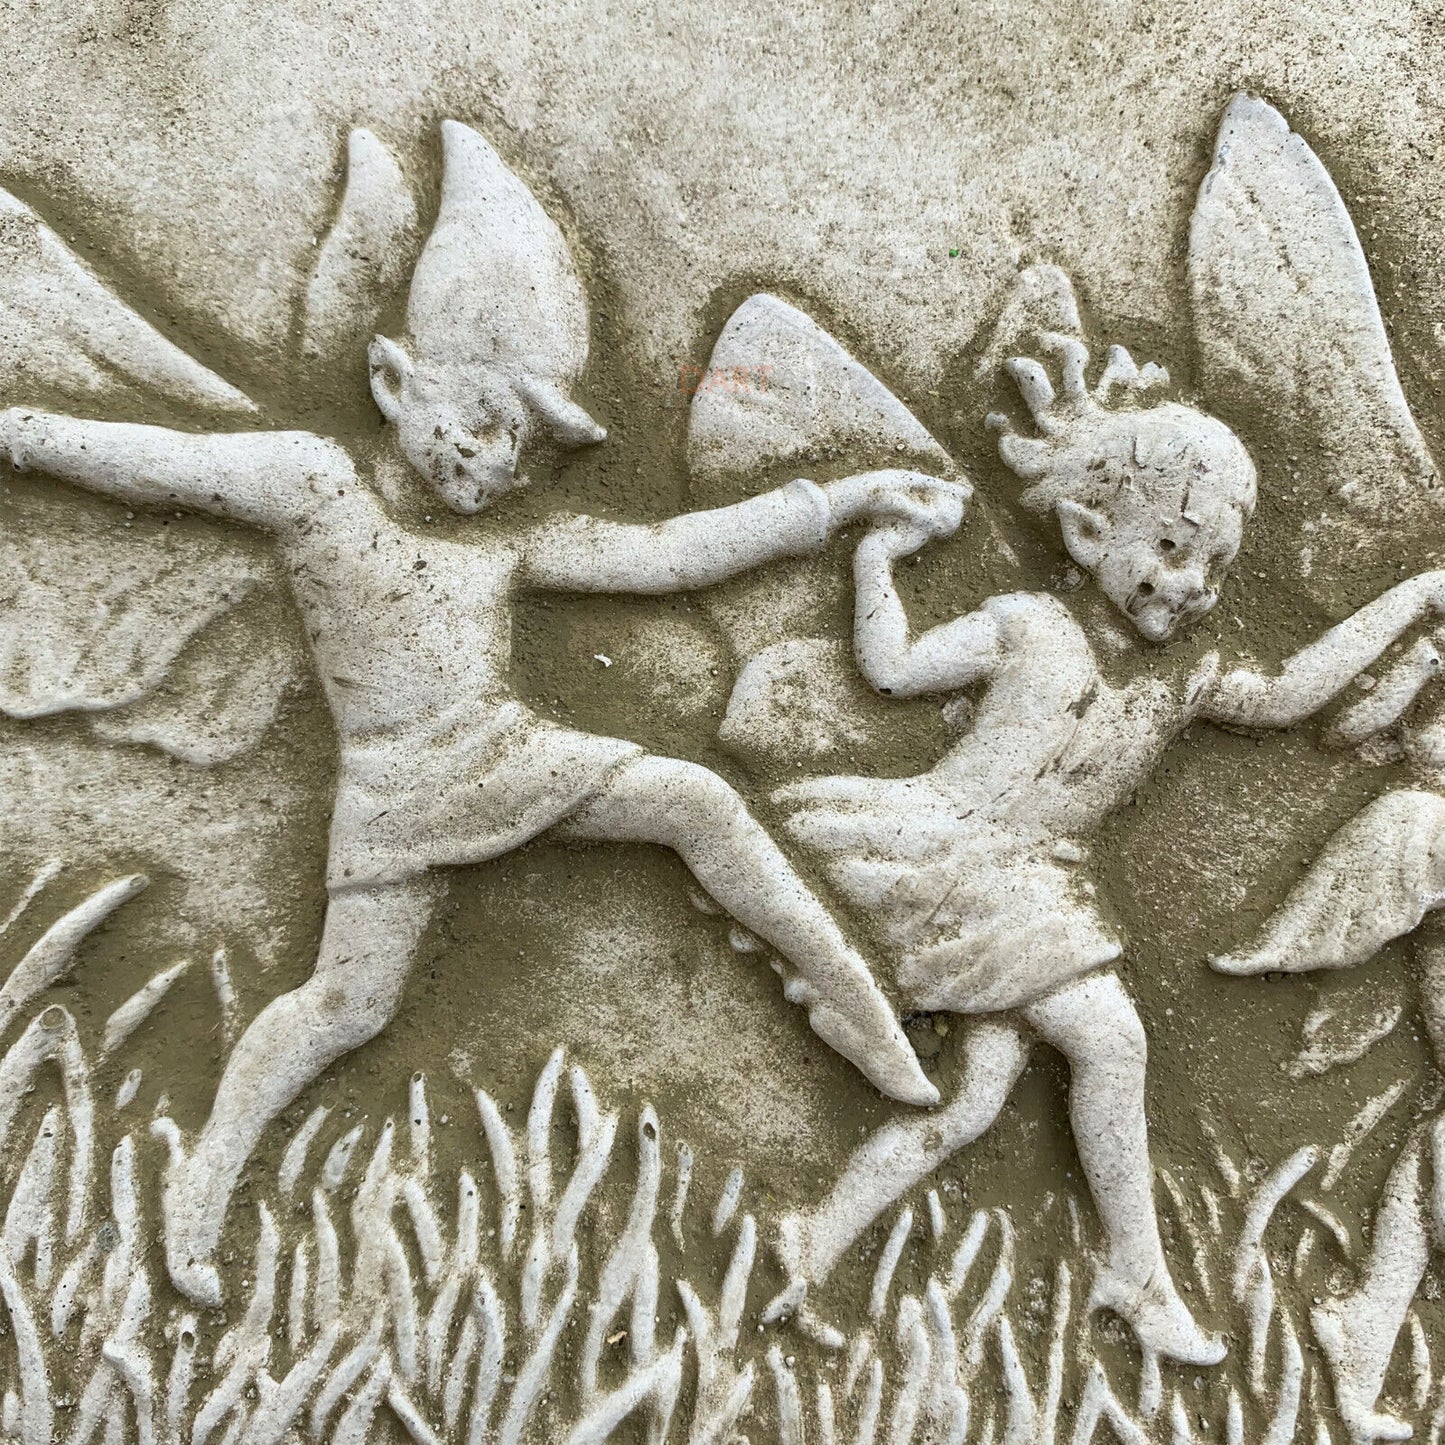 Wandtafel mit tanzenden Feen aus Stein